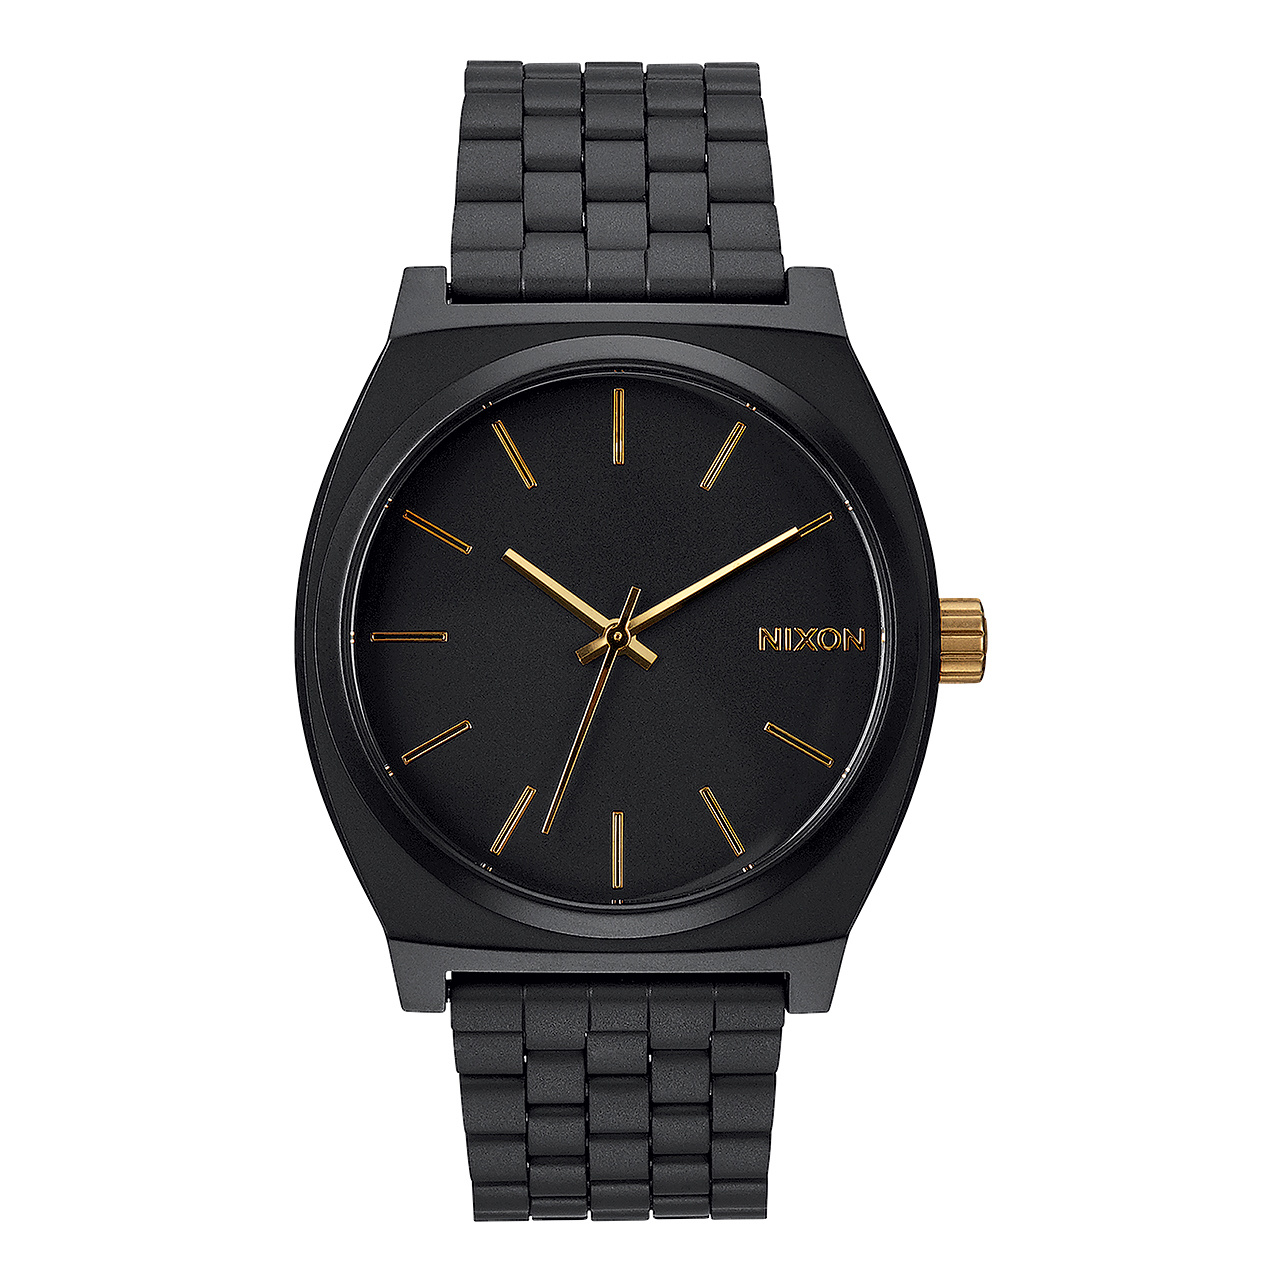 Nixon Time Teller Watch - Matte Black/Gold